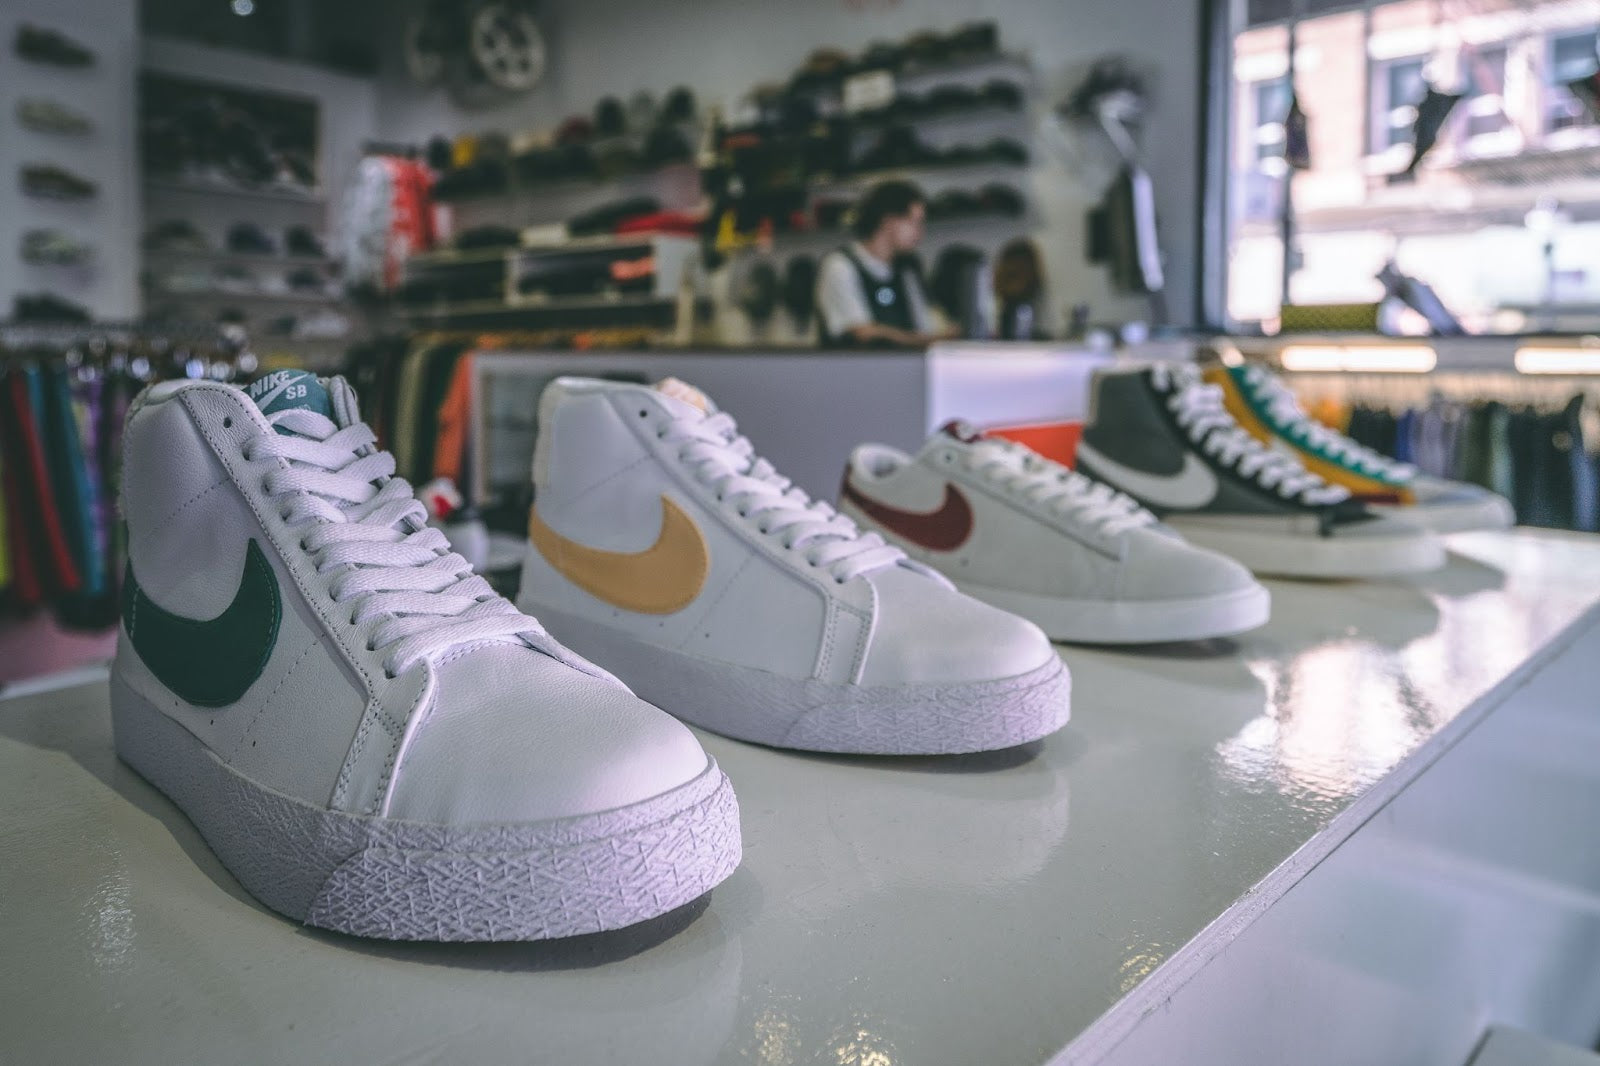 Nike Blazer shoes on a shelf